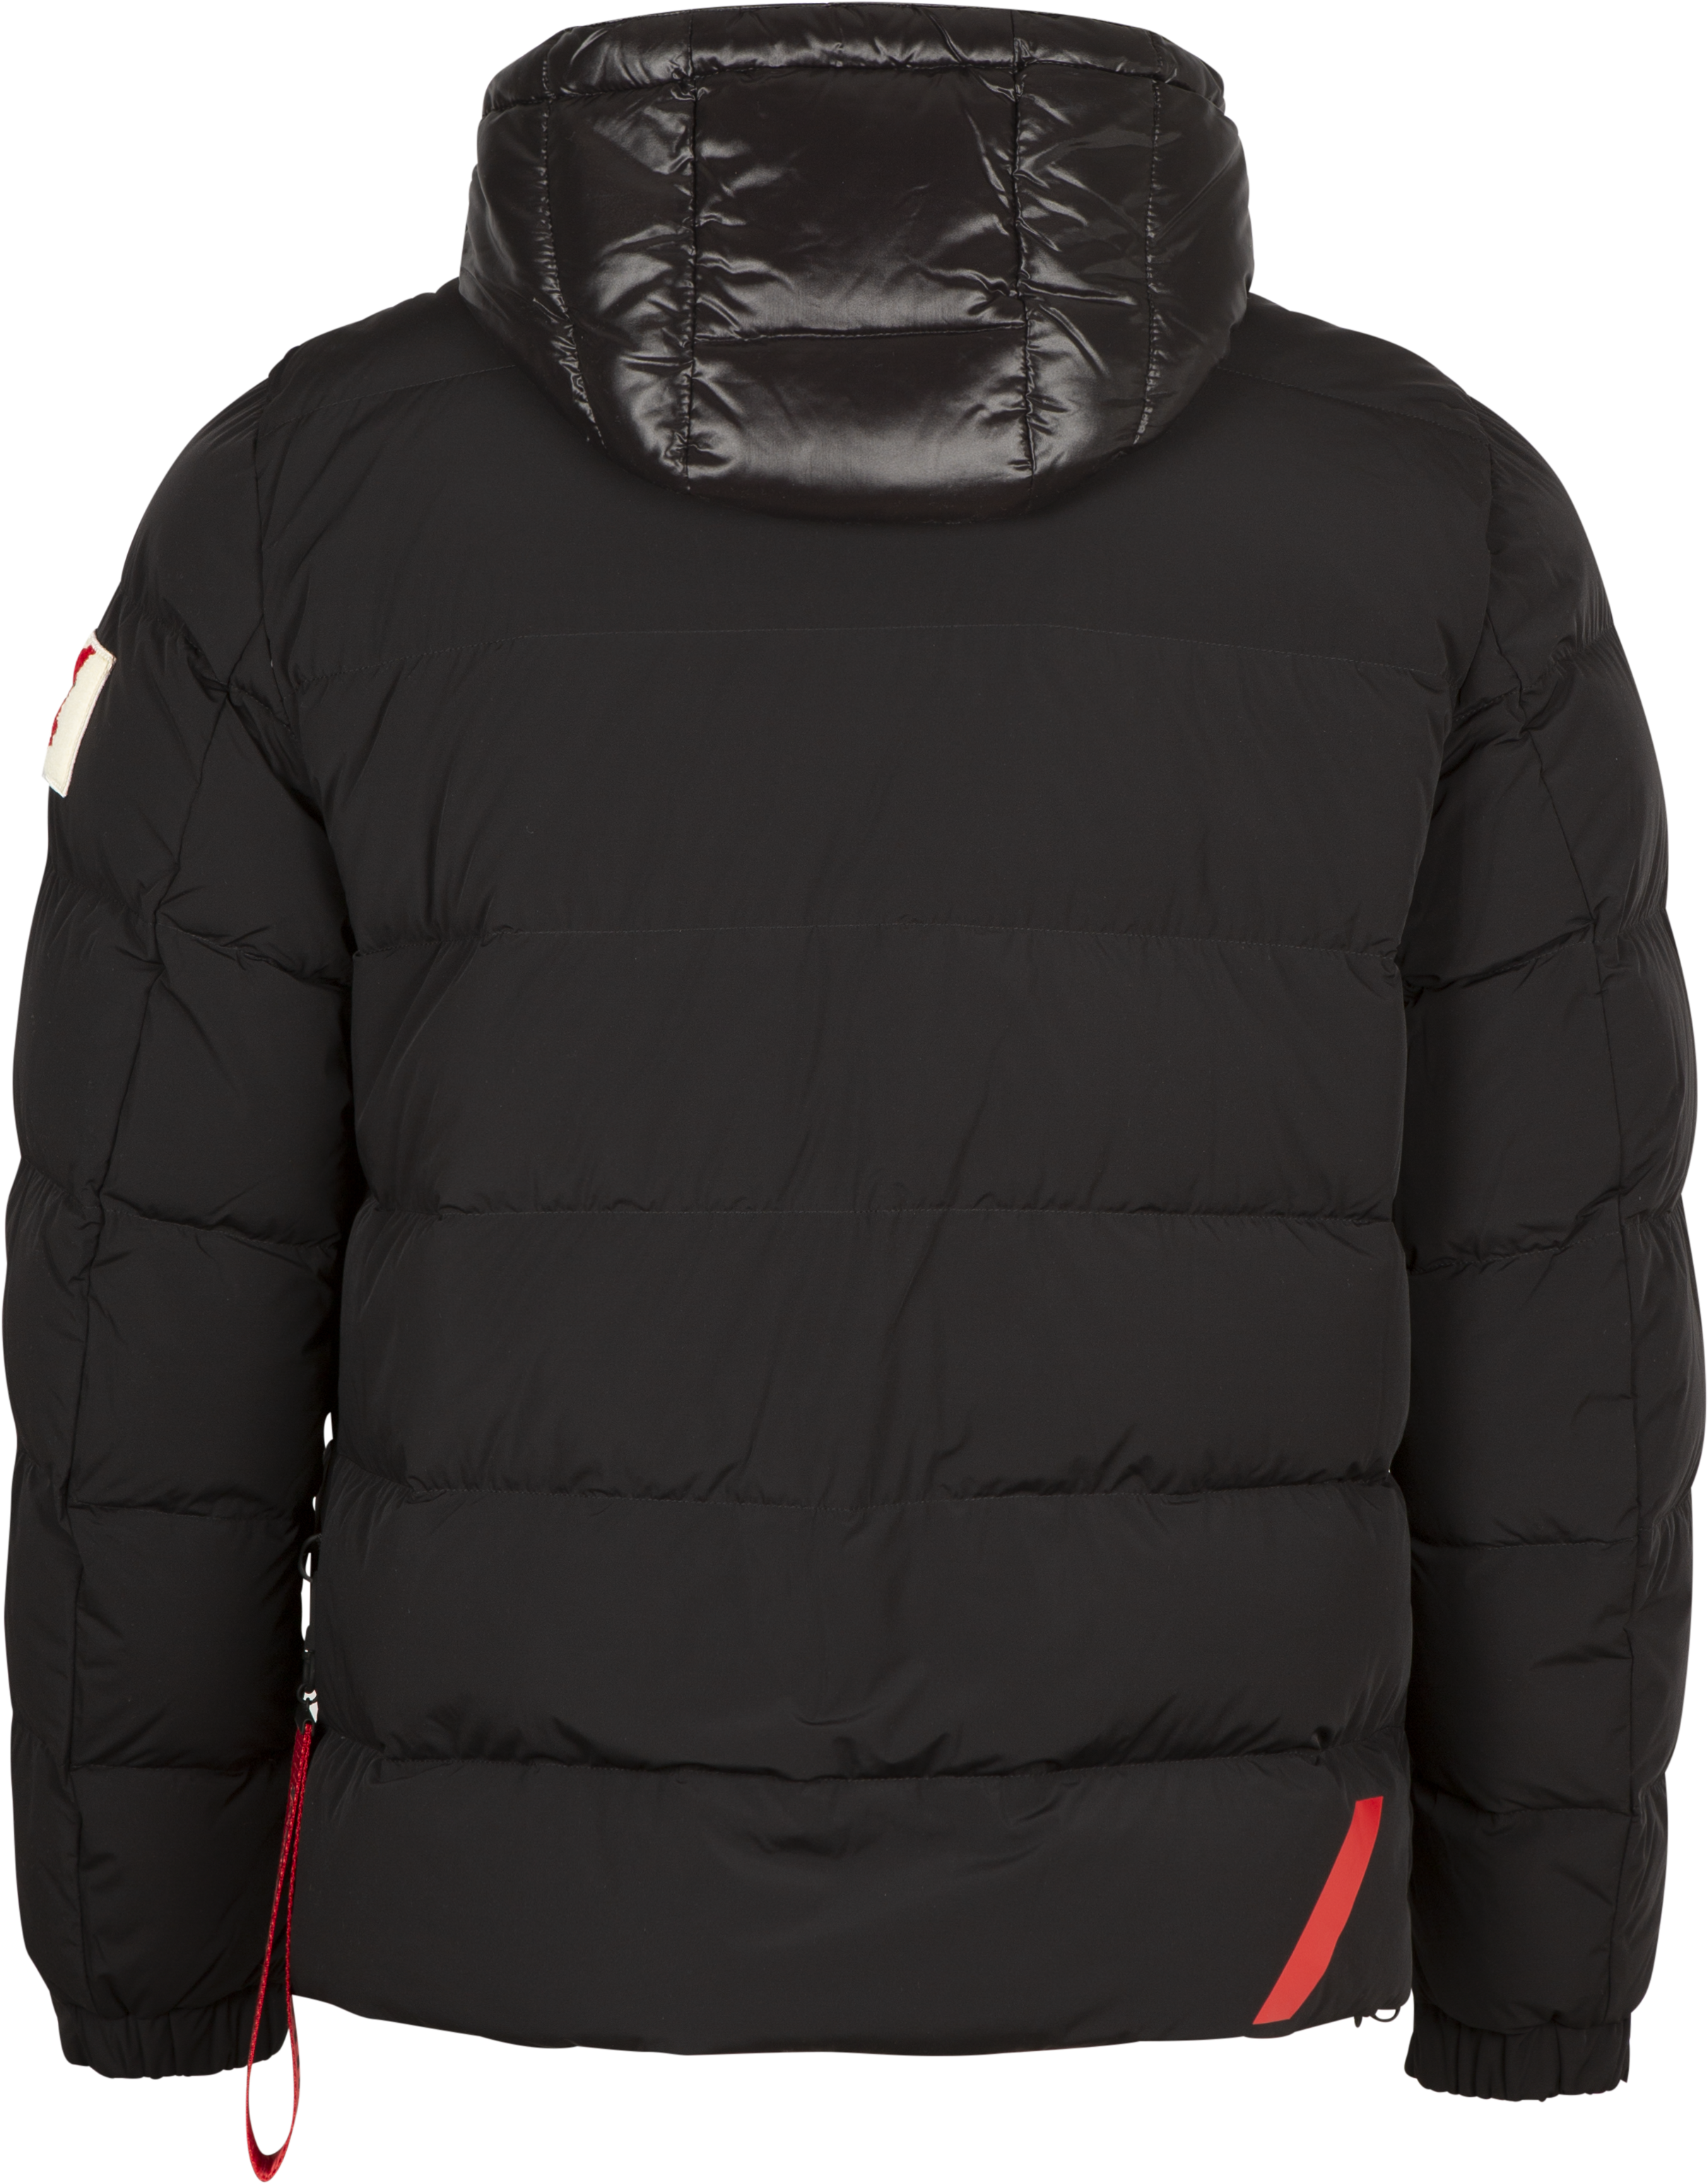 Jacket AL150 N7864-1 - Black